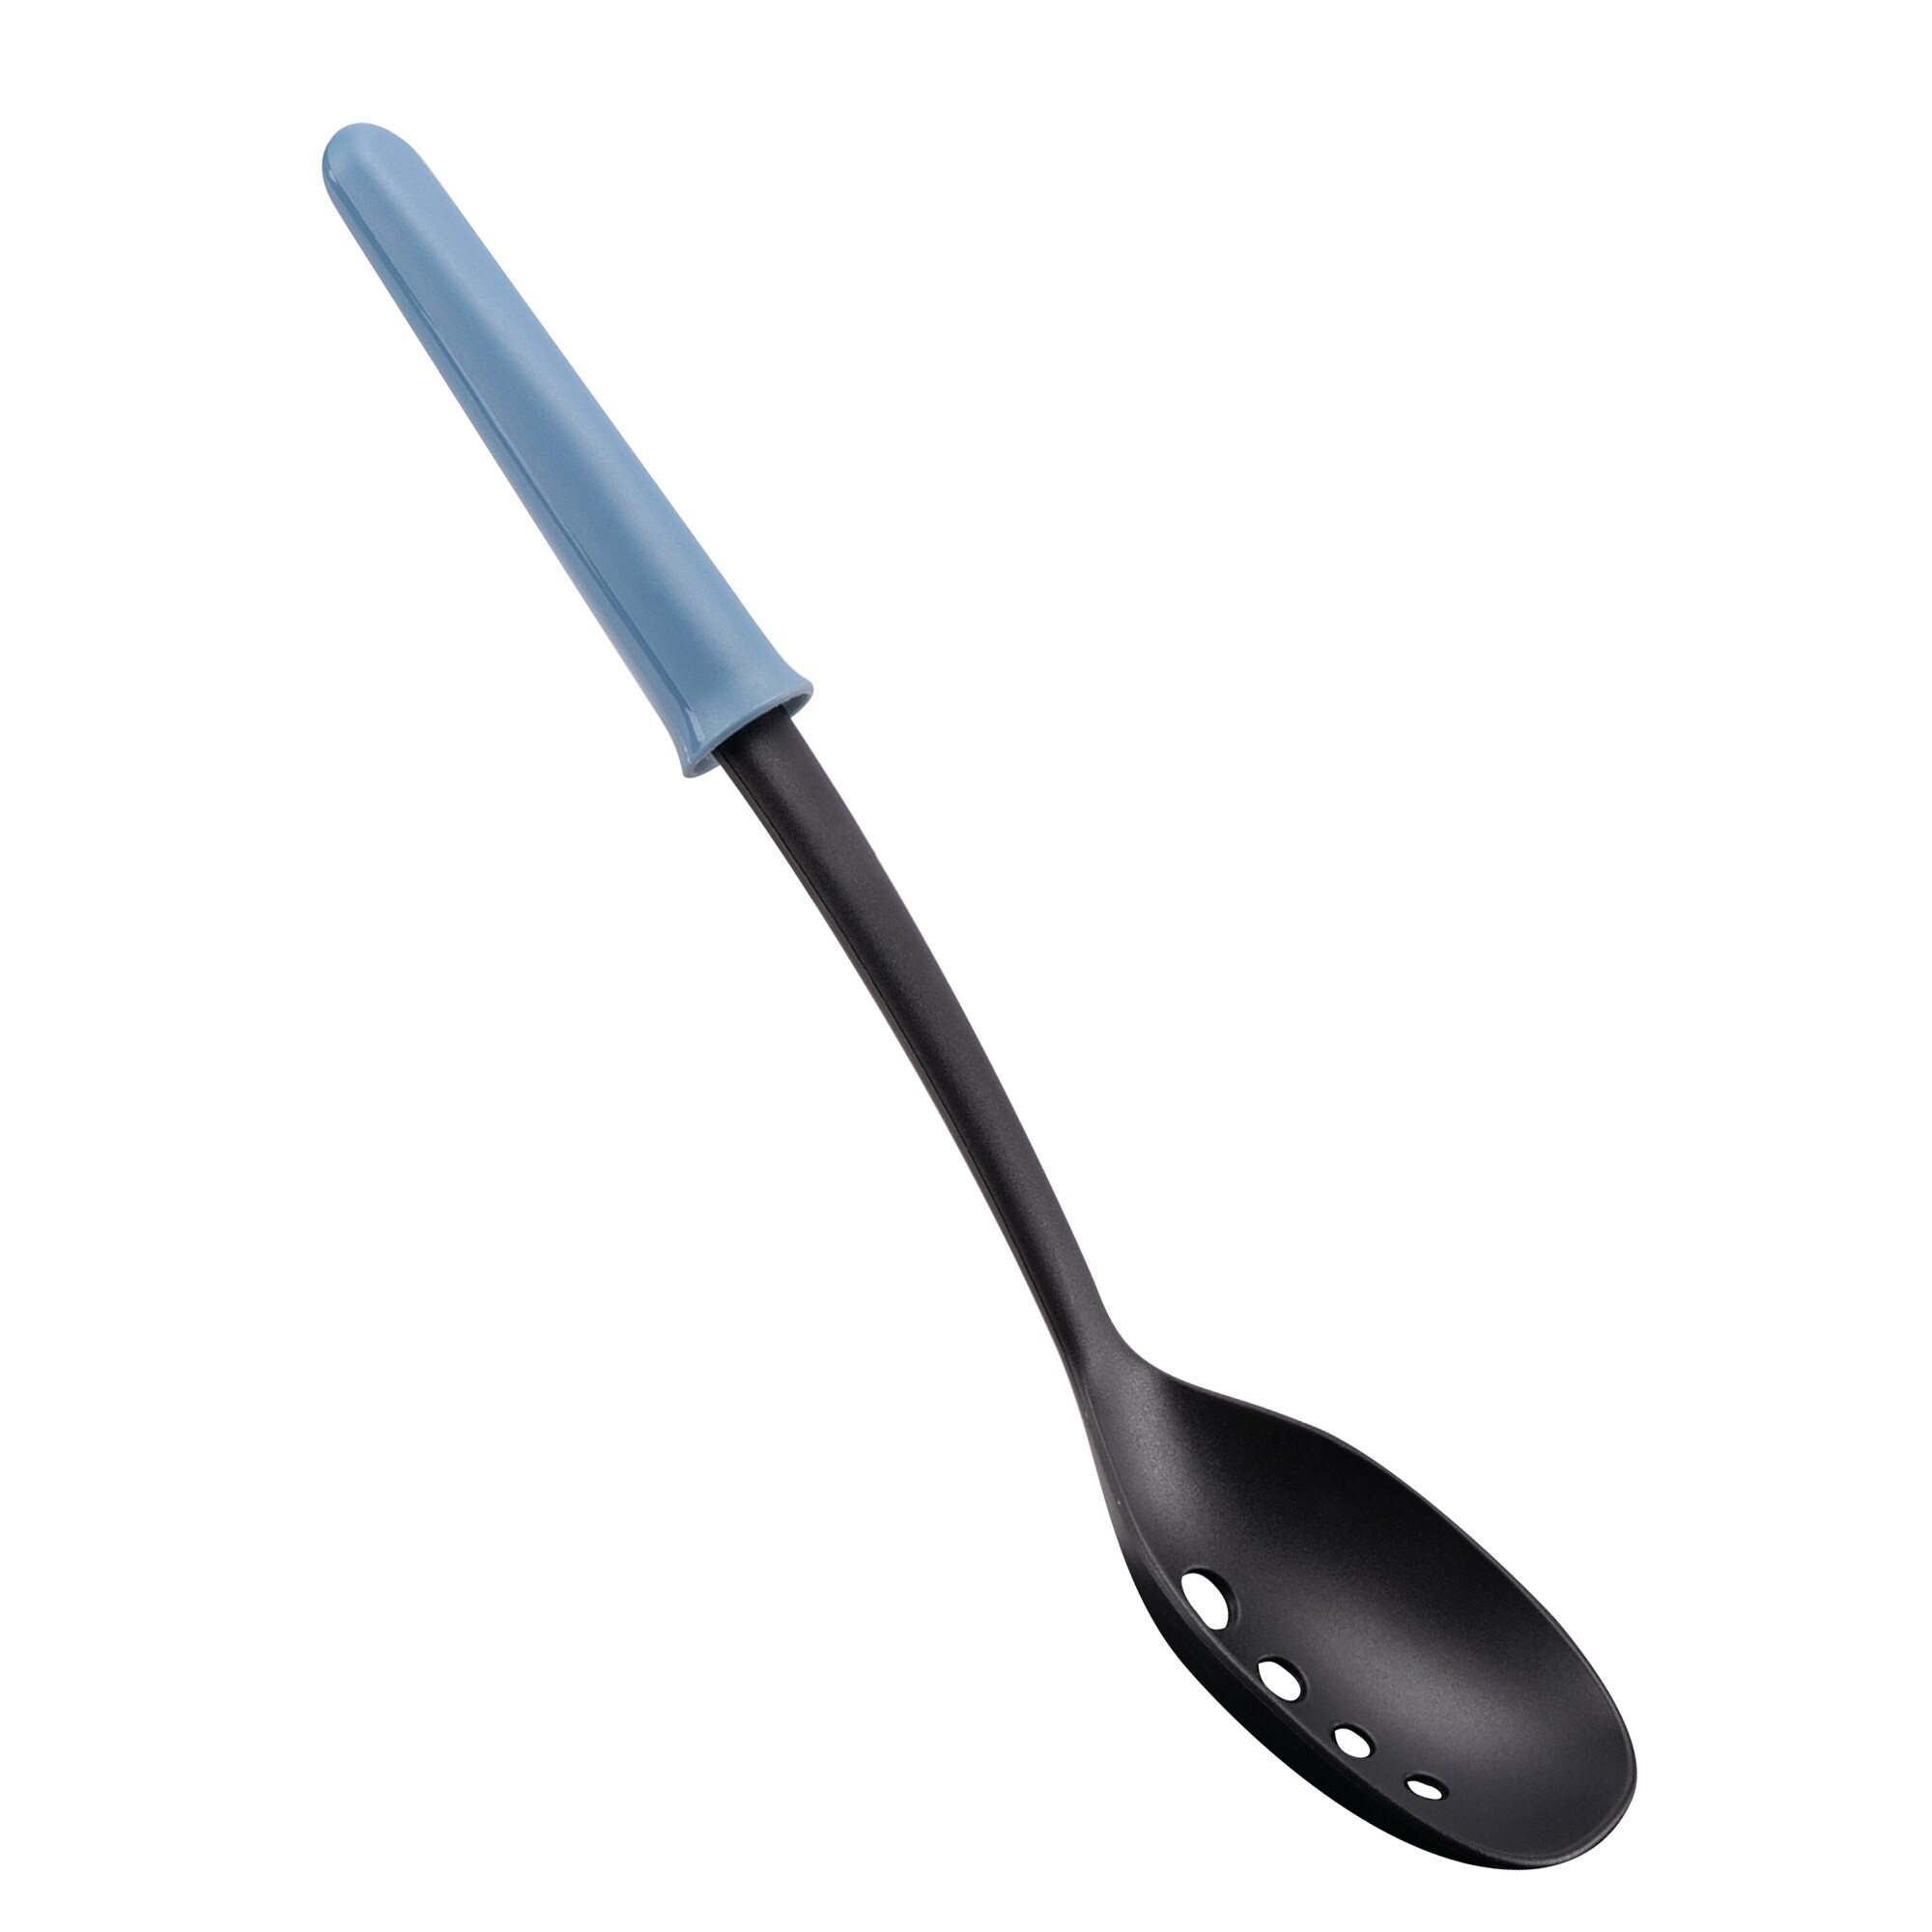 BALLARINI Nero Silicone Cooking Spoon, 1 unit - Foods Co.